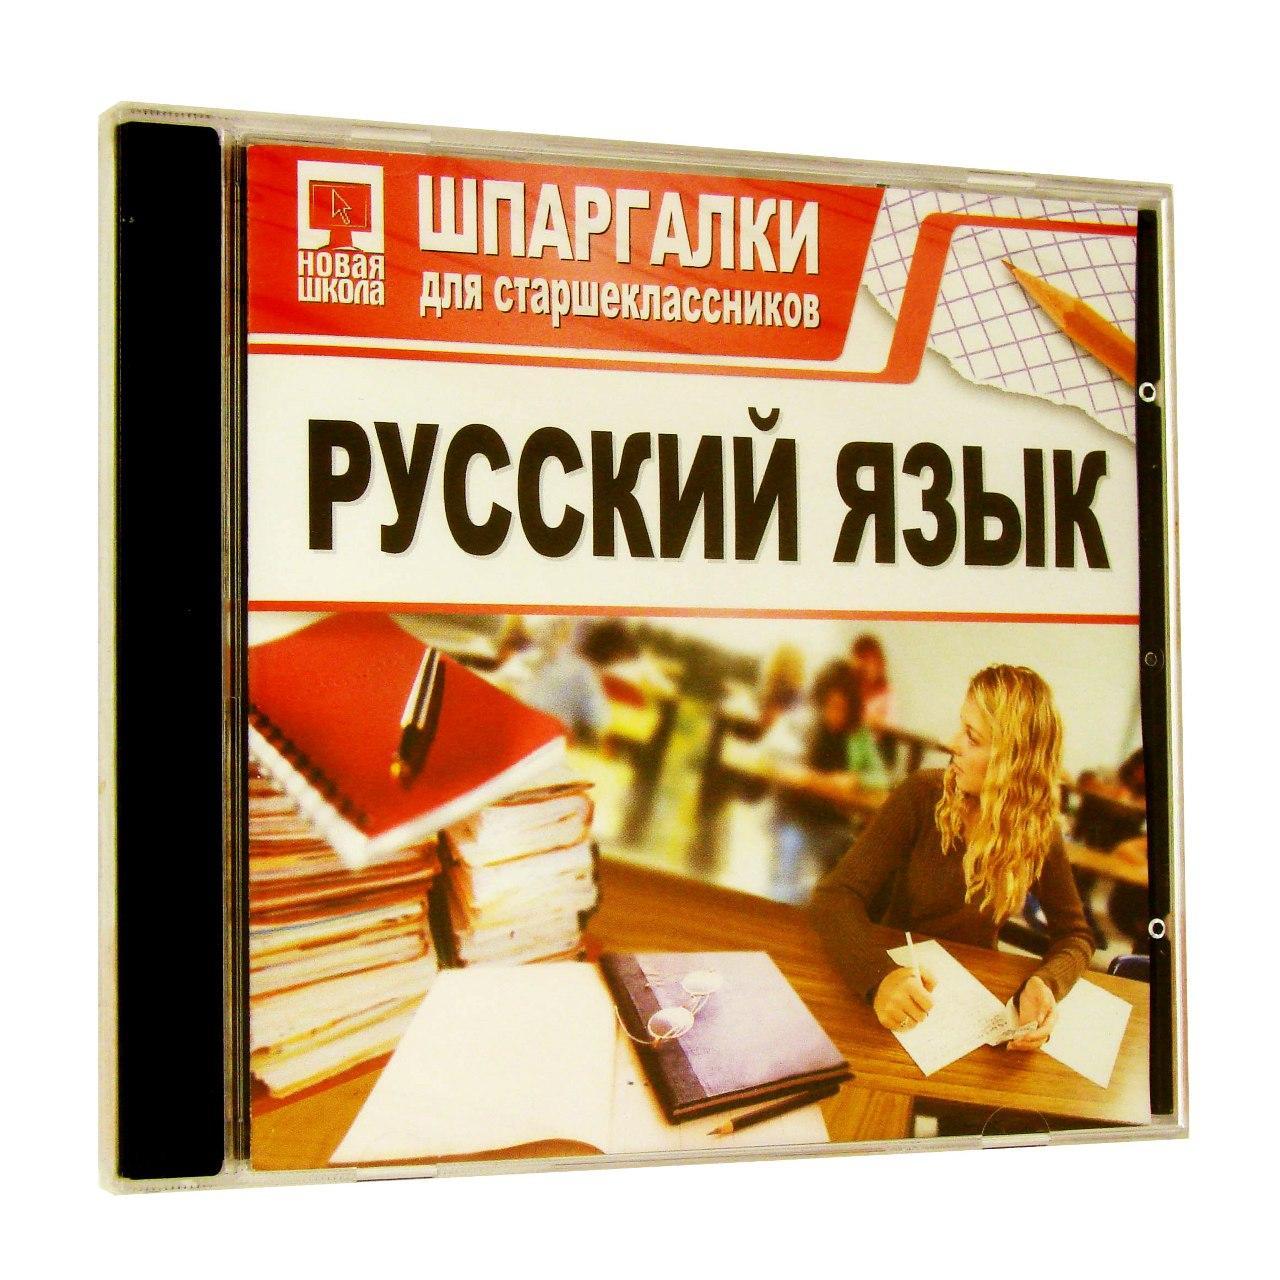 Компьютерный компакт-диск Шпаргалки для старшеклассников. Русский язык (ПК), фирма "Новый диск", 1CD